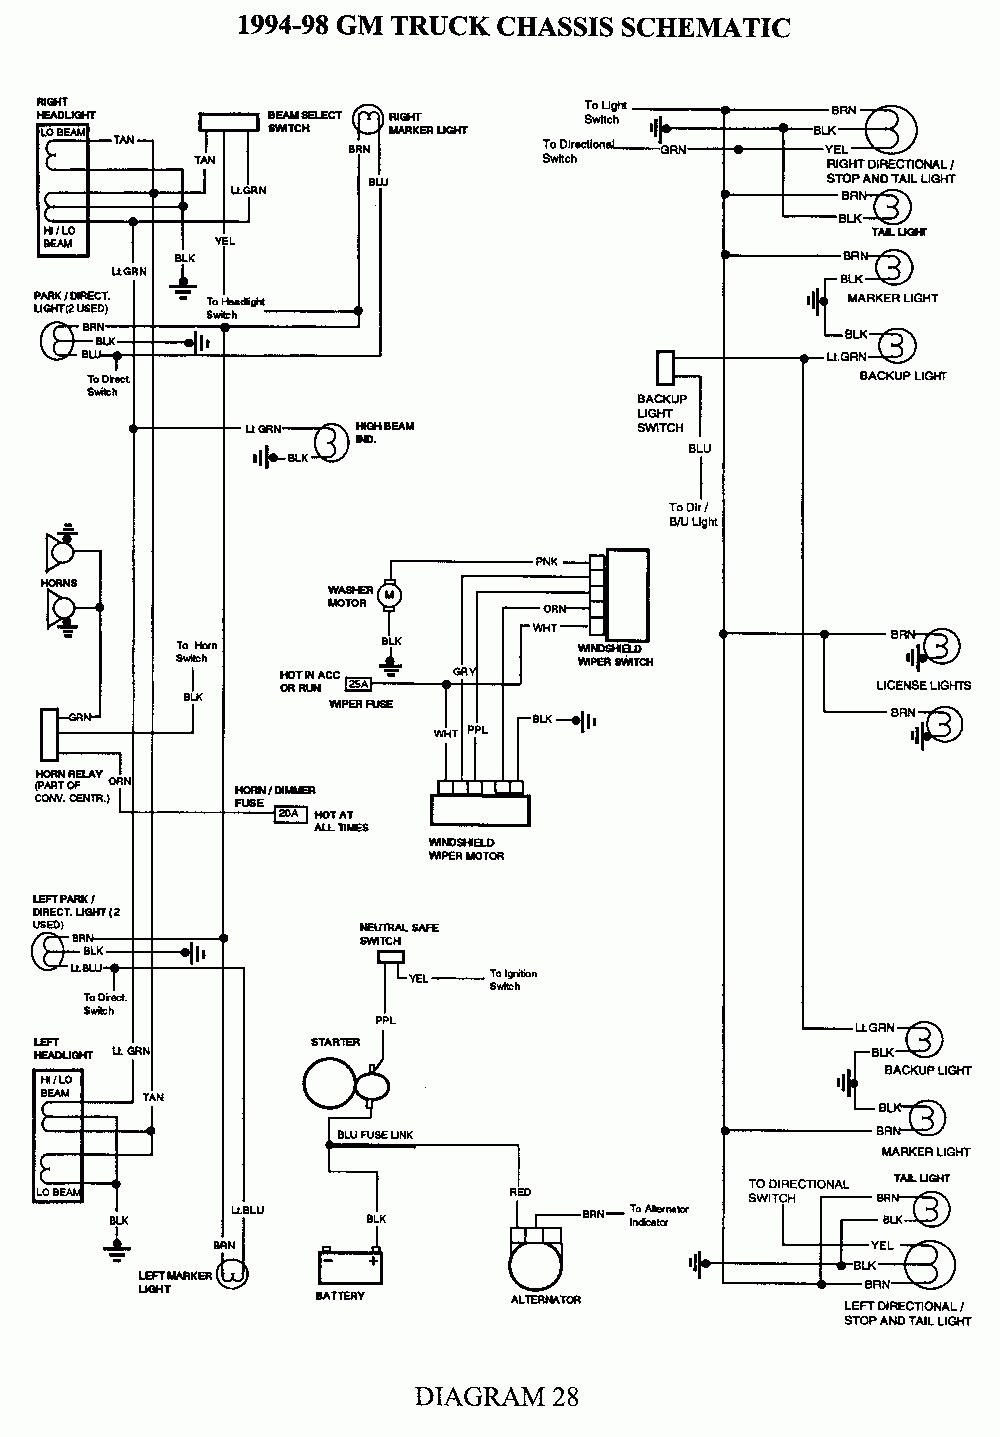 Gm 2500 Brake Light Switch Wiring Diagram | Wiring Diagram - Gm Headlight Switch Wiring Diagram